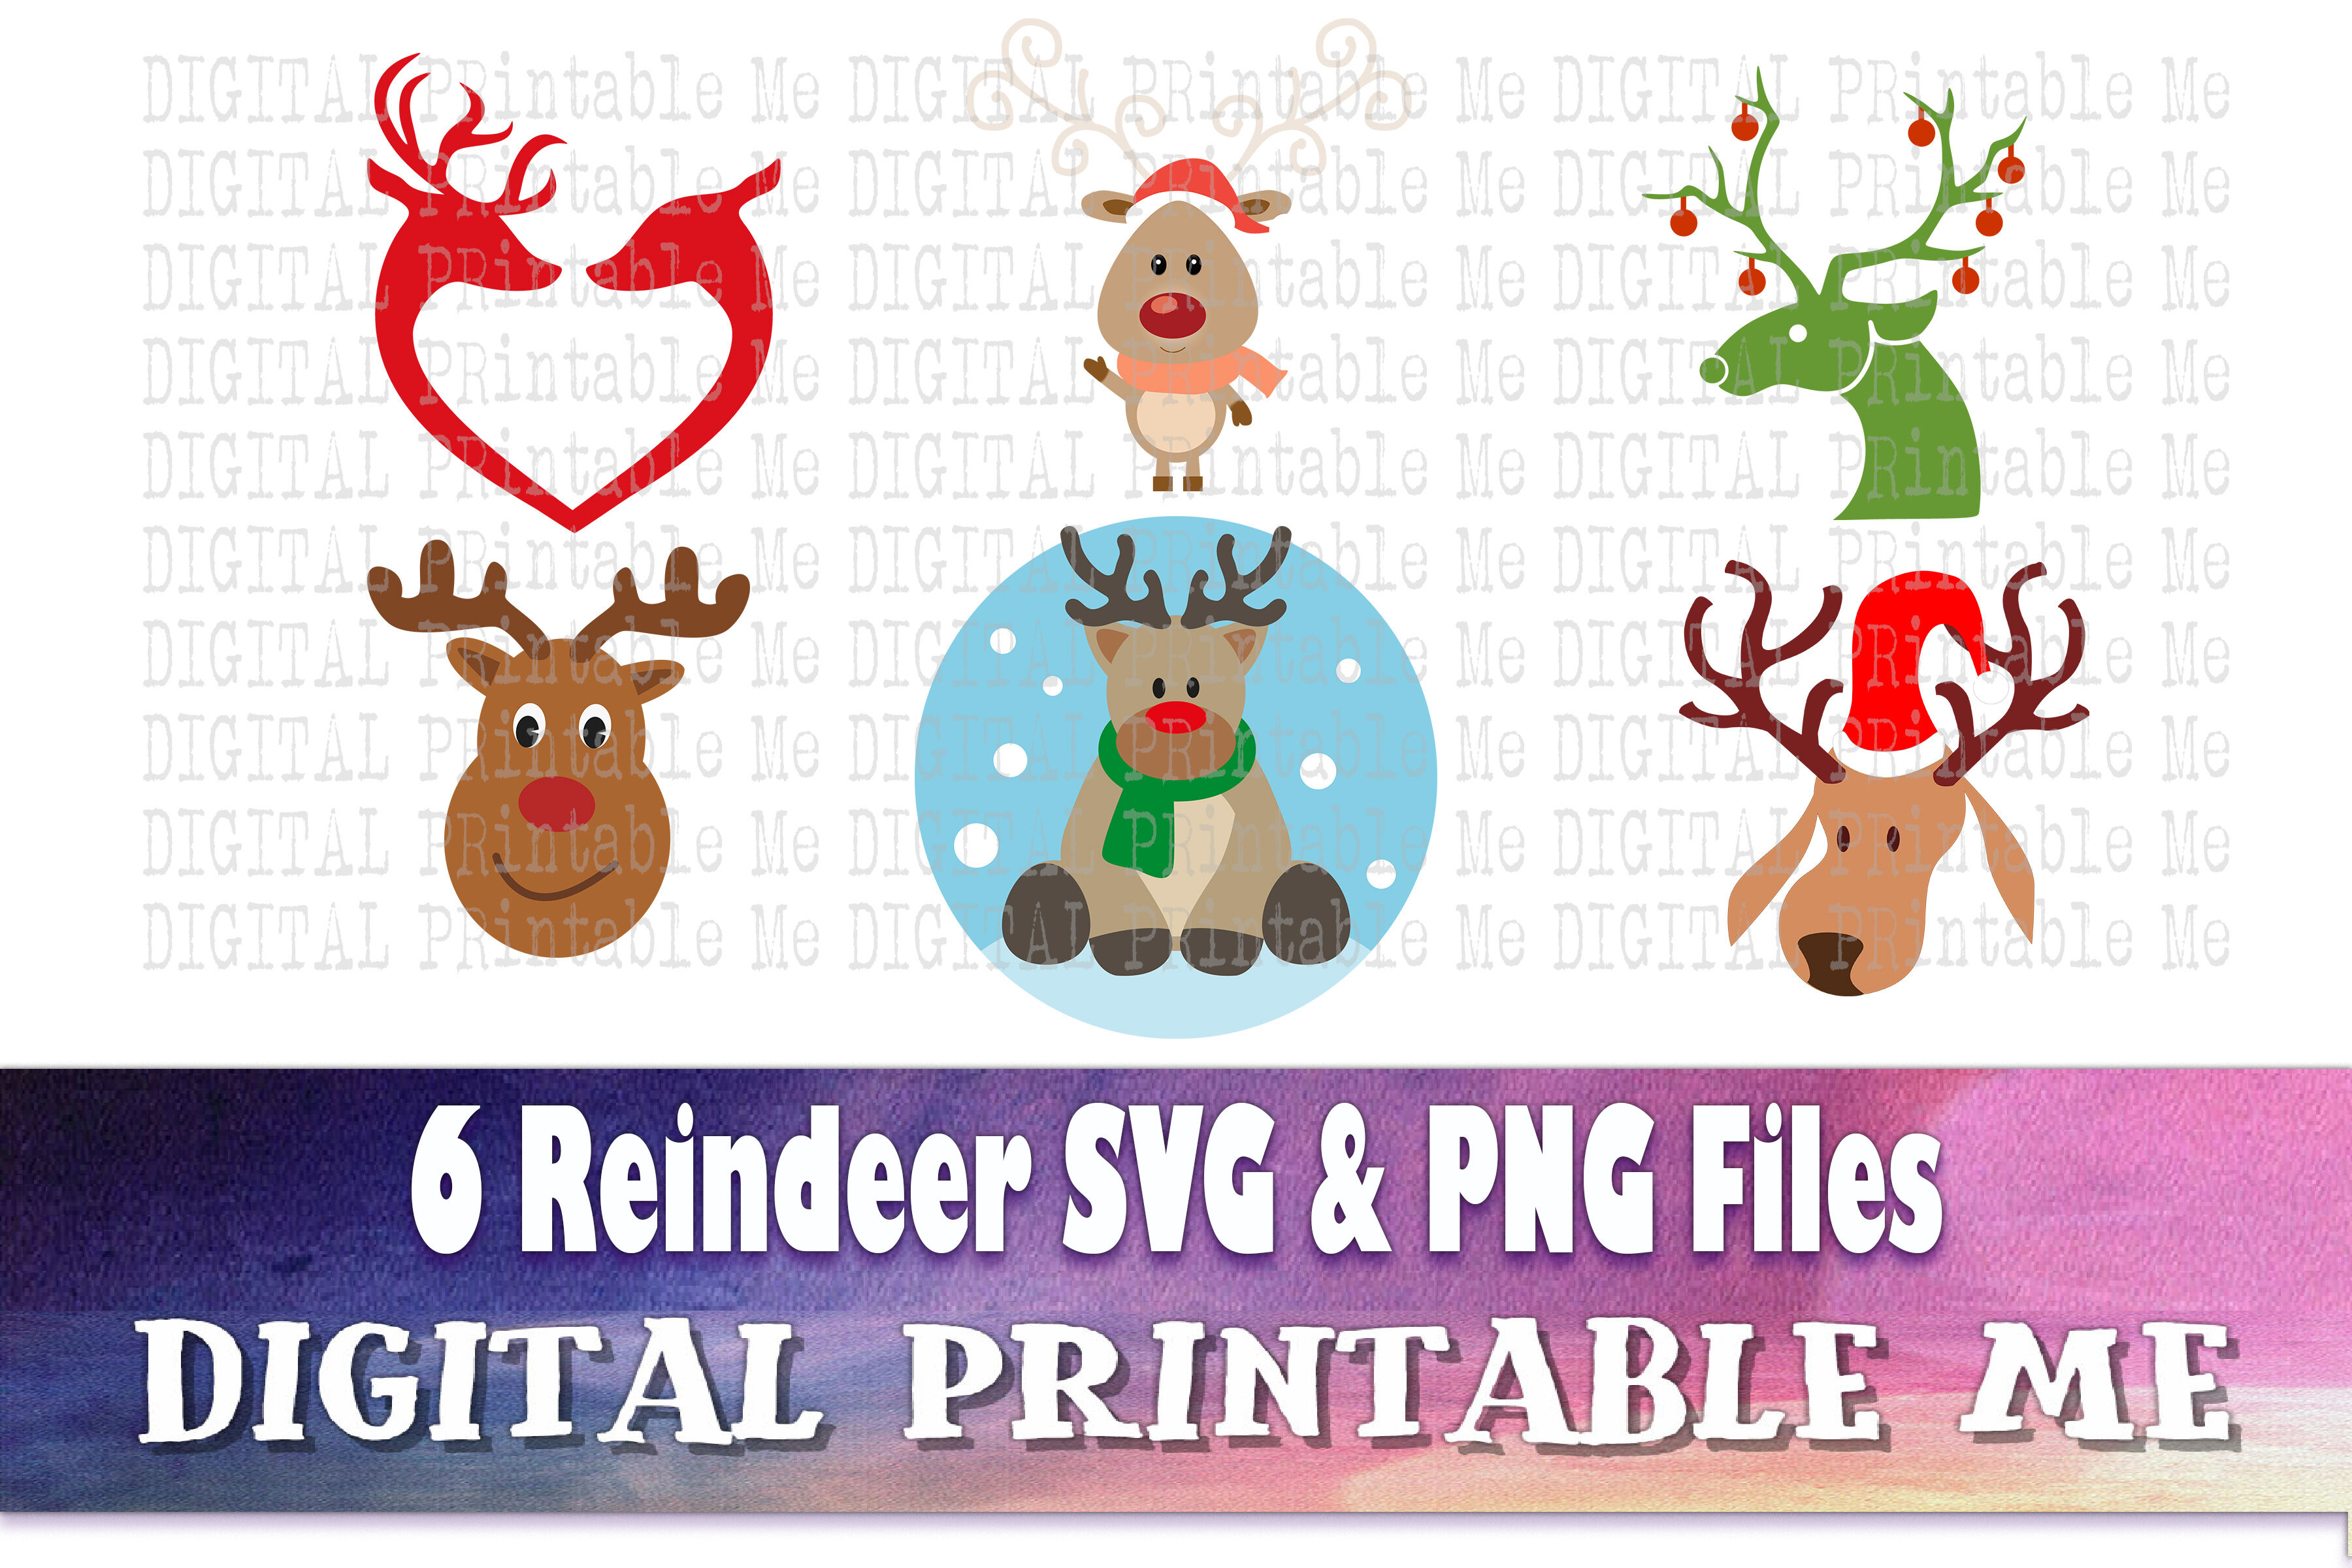 Reindeer Svg Bundle Png Clip Art Pack 6 Images Pack Instant Downl By Digitalprintableme Thehungryjpeg Com